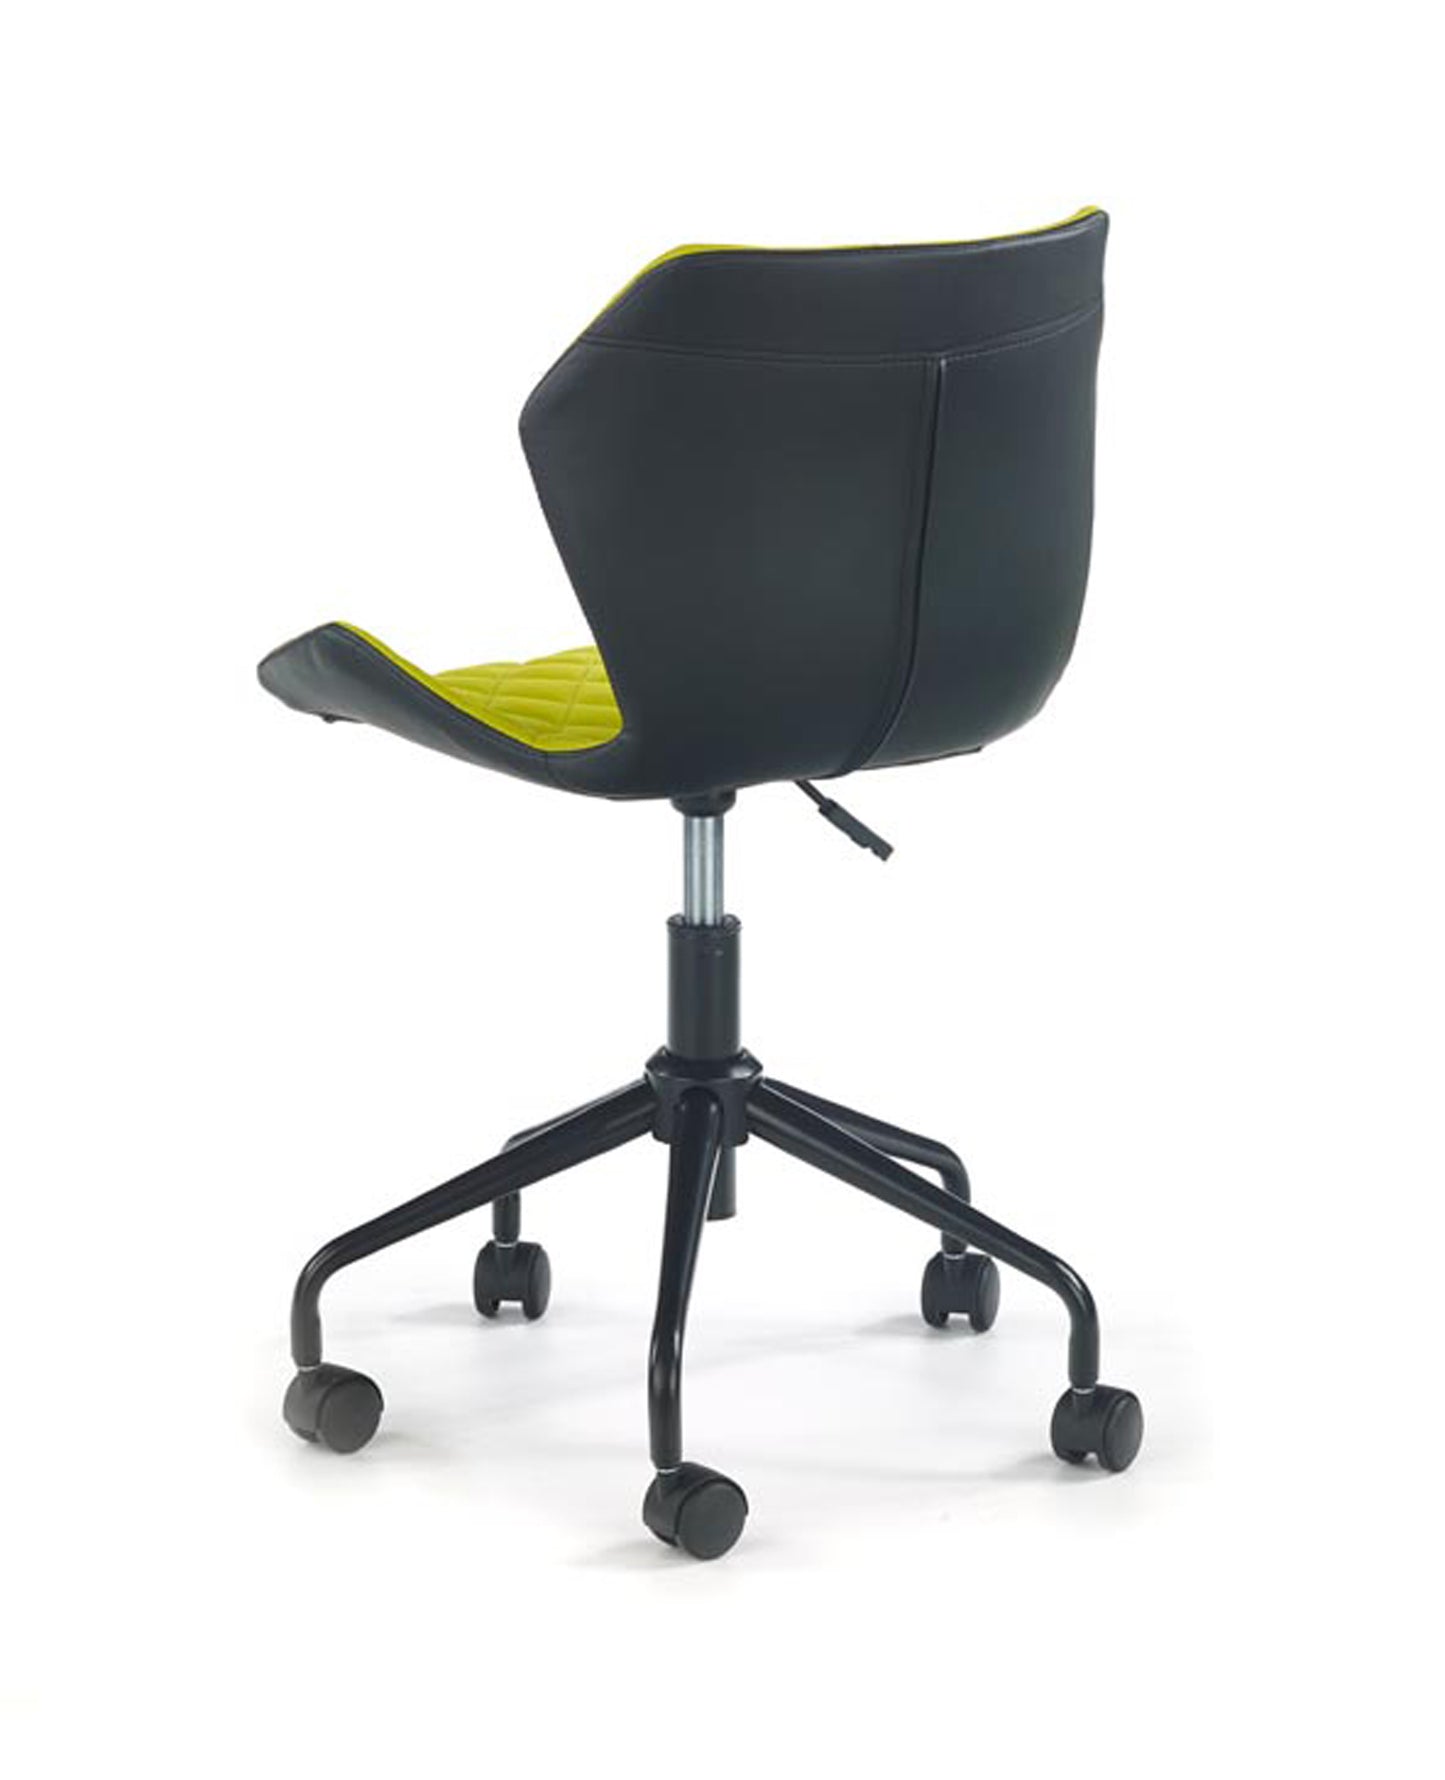 Krēsls Rob eko adā 78/48/53 cm zaļš/melns - N1 Home